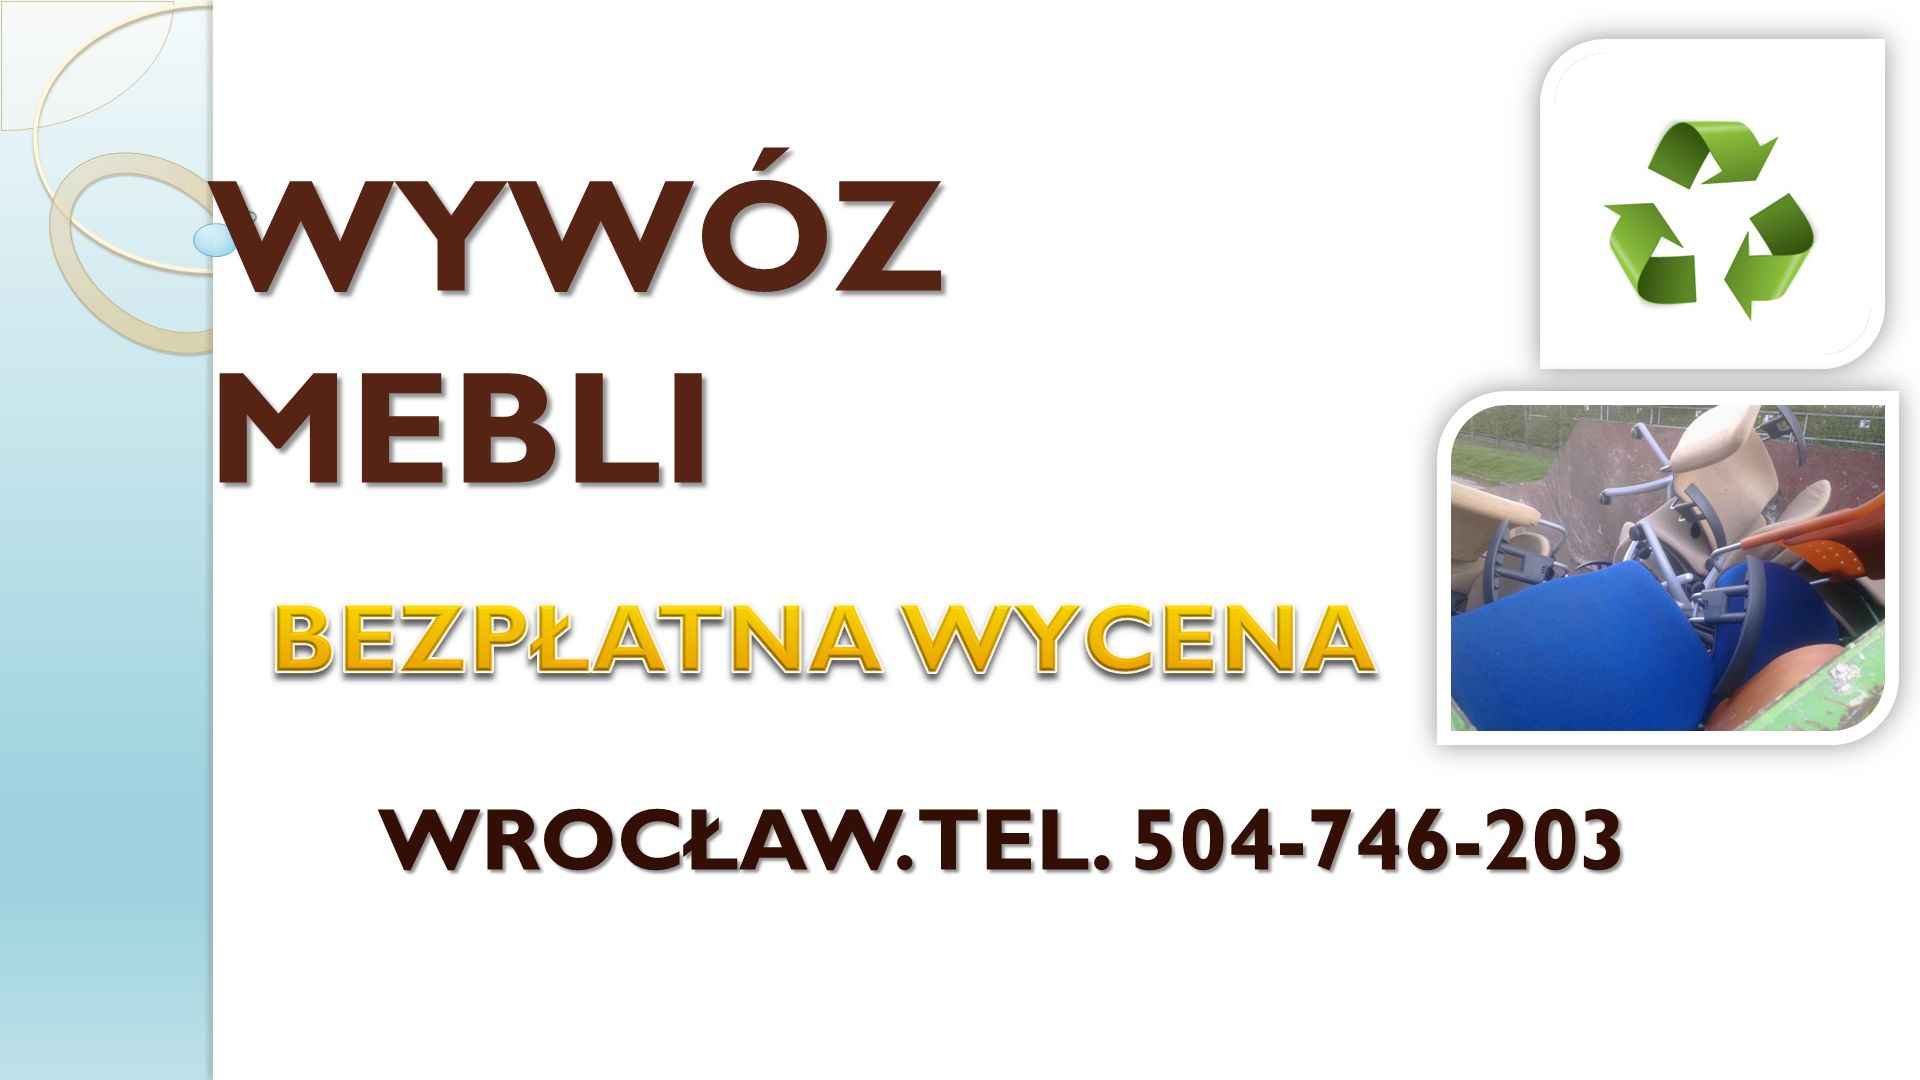 Wywóz mebli, Wrocław,tel. 504-746-203, utylizacja,starych,mebli,odbiór Psie Pole - zdjęcie 2